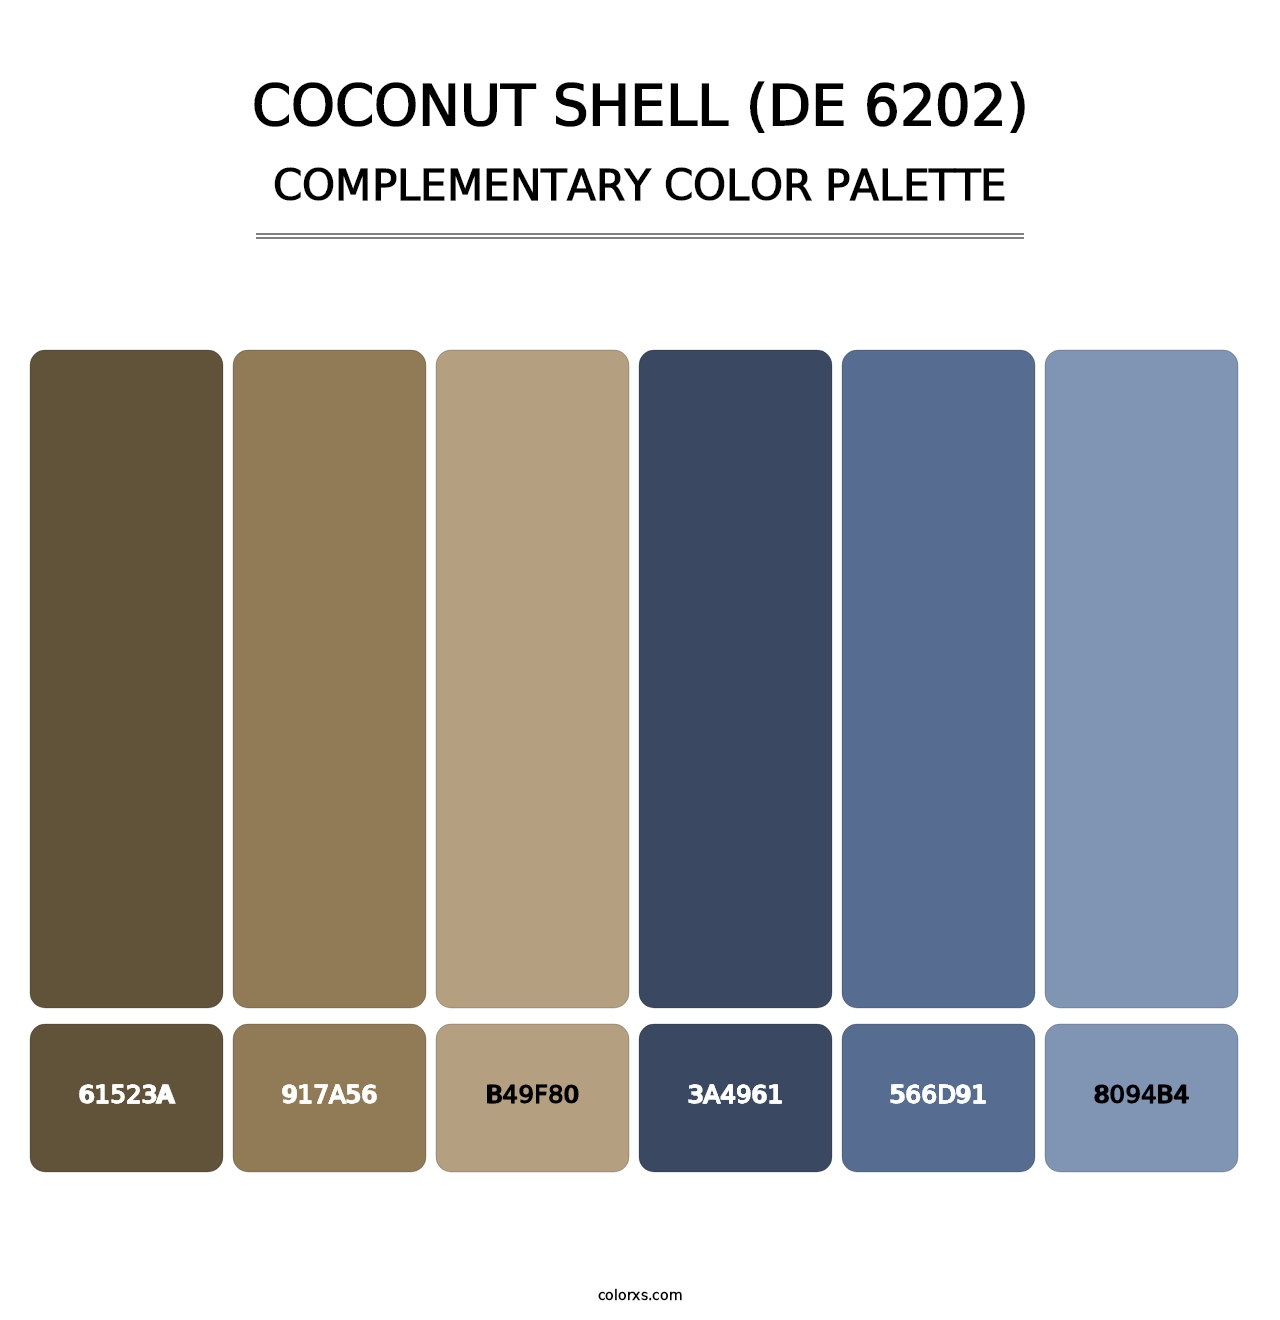 Coconut Shell (DE 6202) - Complementary Color Palette